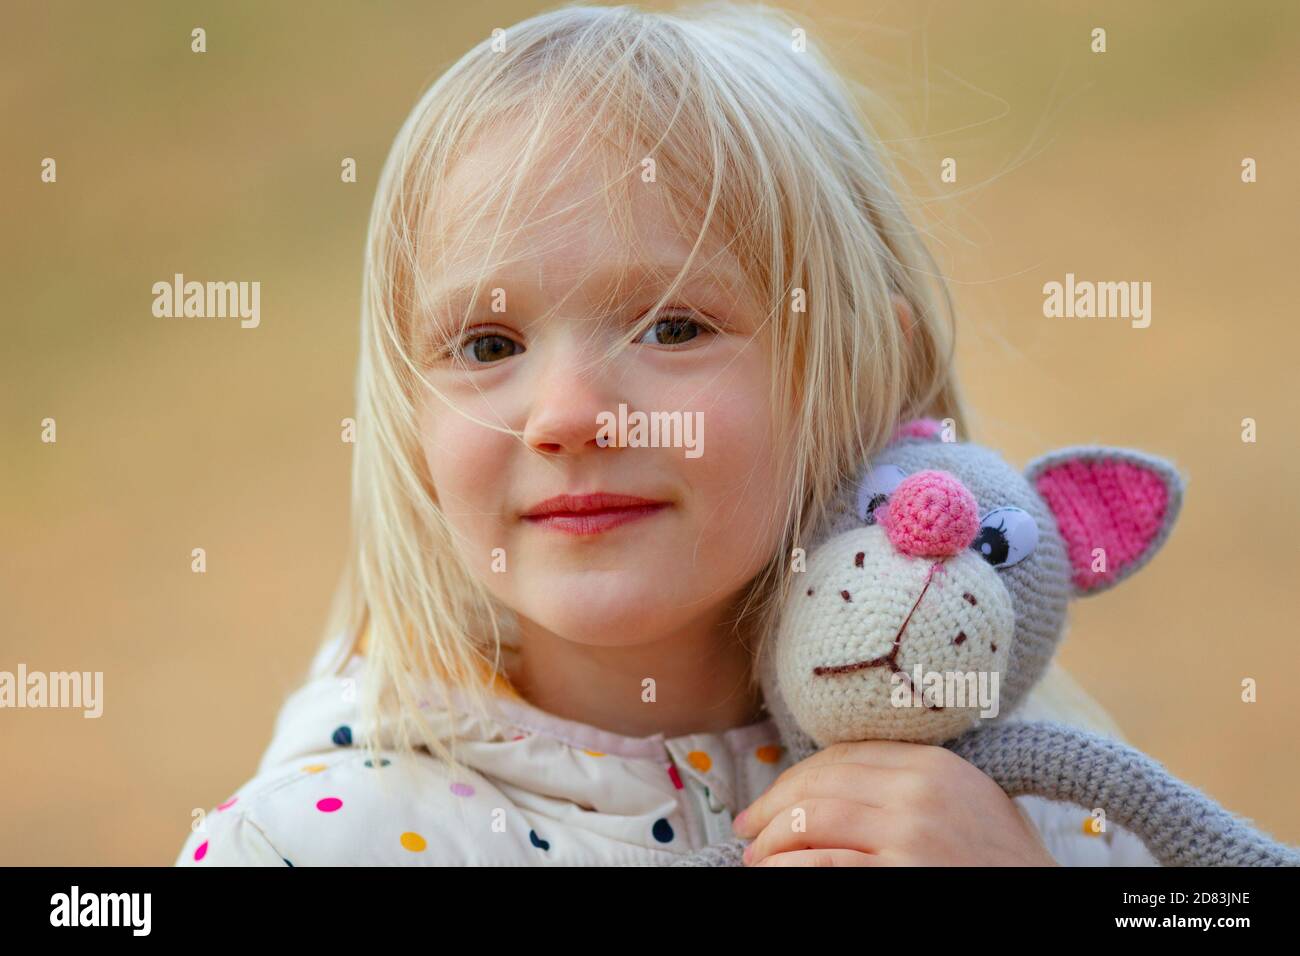 Nahaufnahme Porträt der schönen blonden Kleinkind Mädchen Umarmung ihrer Lieblings-handgemachte Spielzeug (gestrickte Katze) im Freien. Windiger Tag, unordentliche Haare im Gesicht. Stockfoto